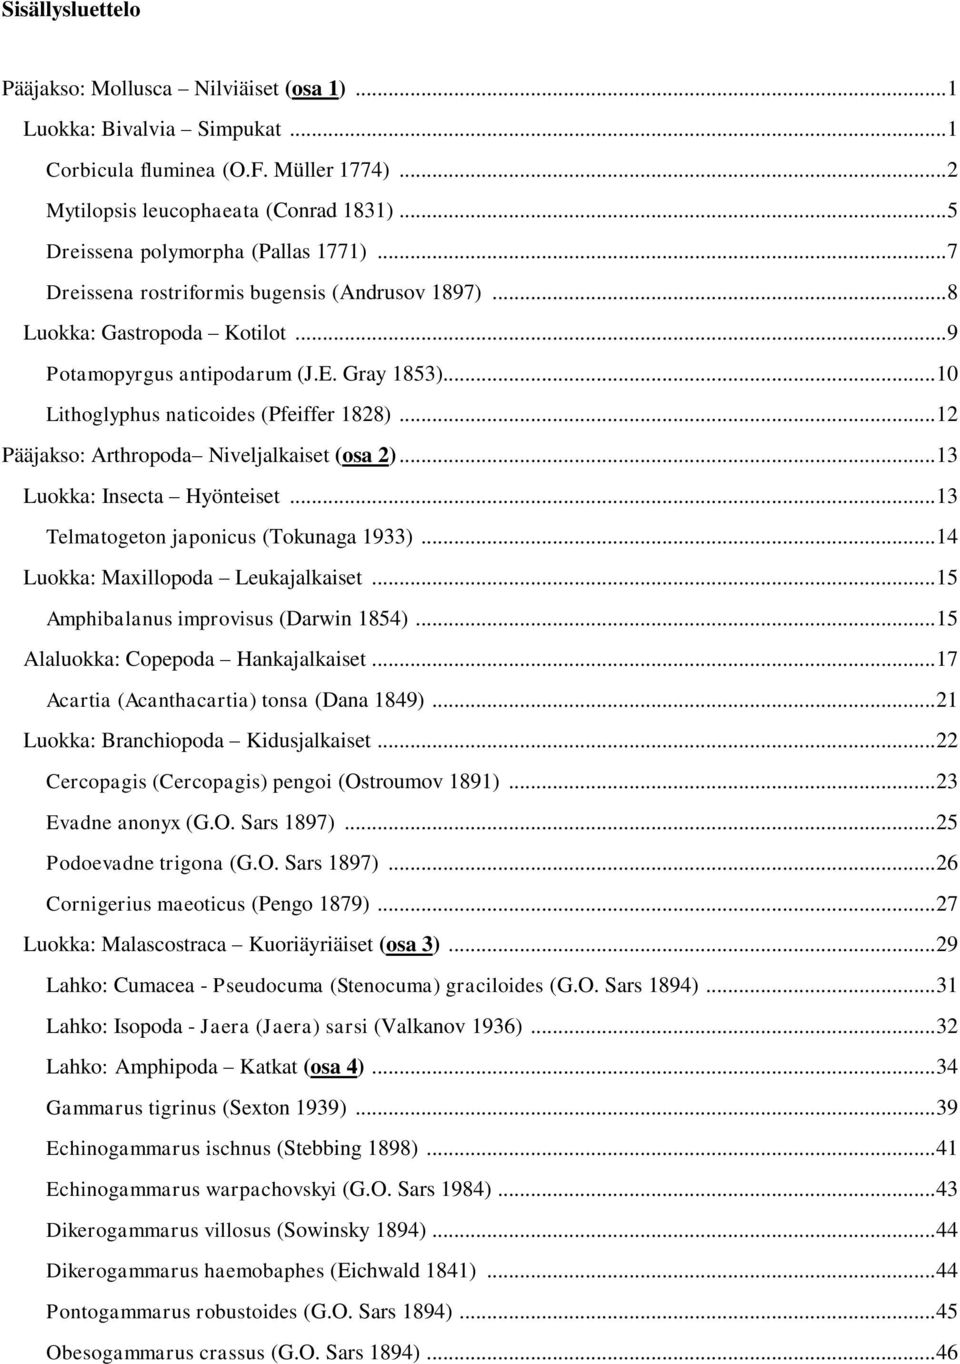 .. 10 Lithoglyphus naticoides (Pfeiffer 1828)... 12 Pääjakso: Arthropoda Niveljalkaiset (osa 2)... 13 Luokka: Insecta Hyönteiset... 13 Telmatogeton japonicus (Tokunaga 1933).